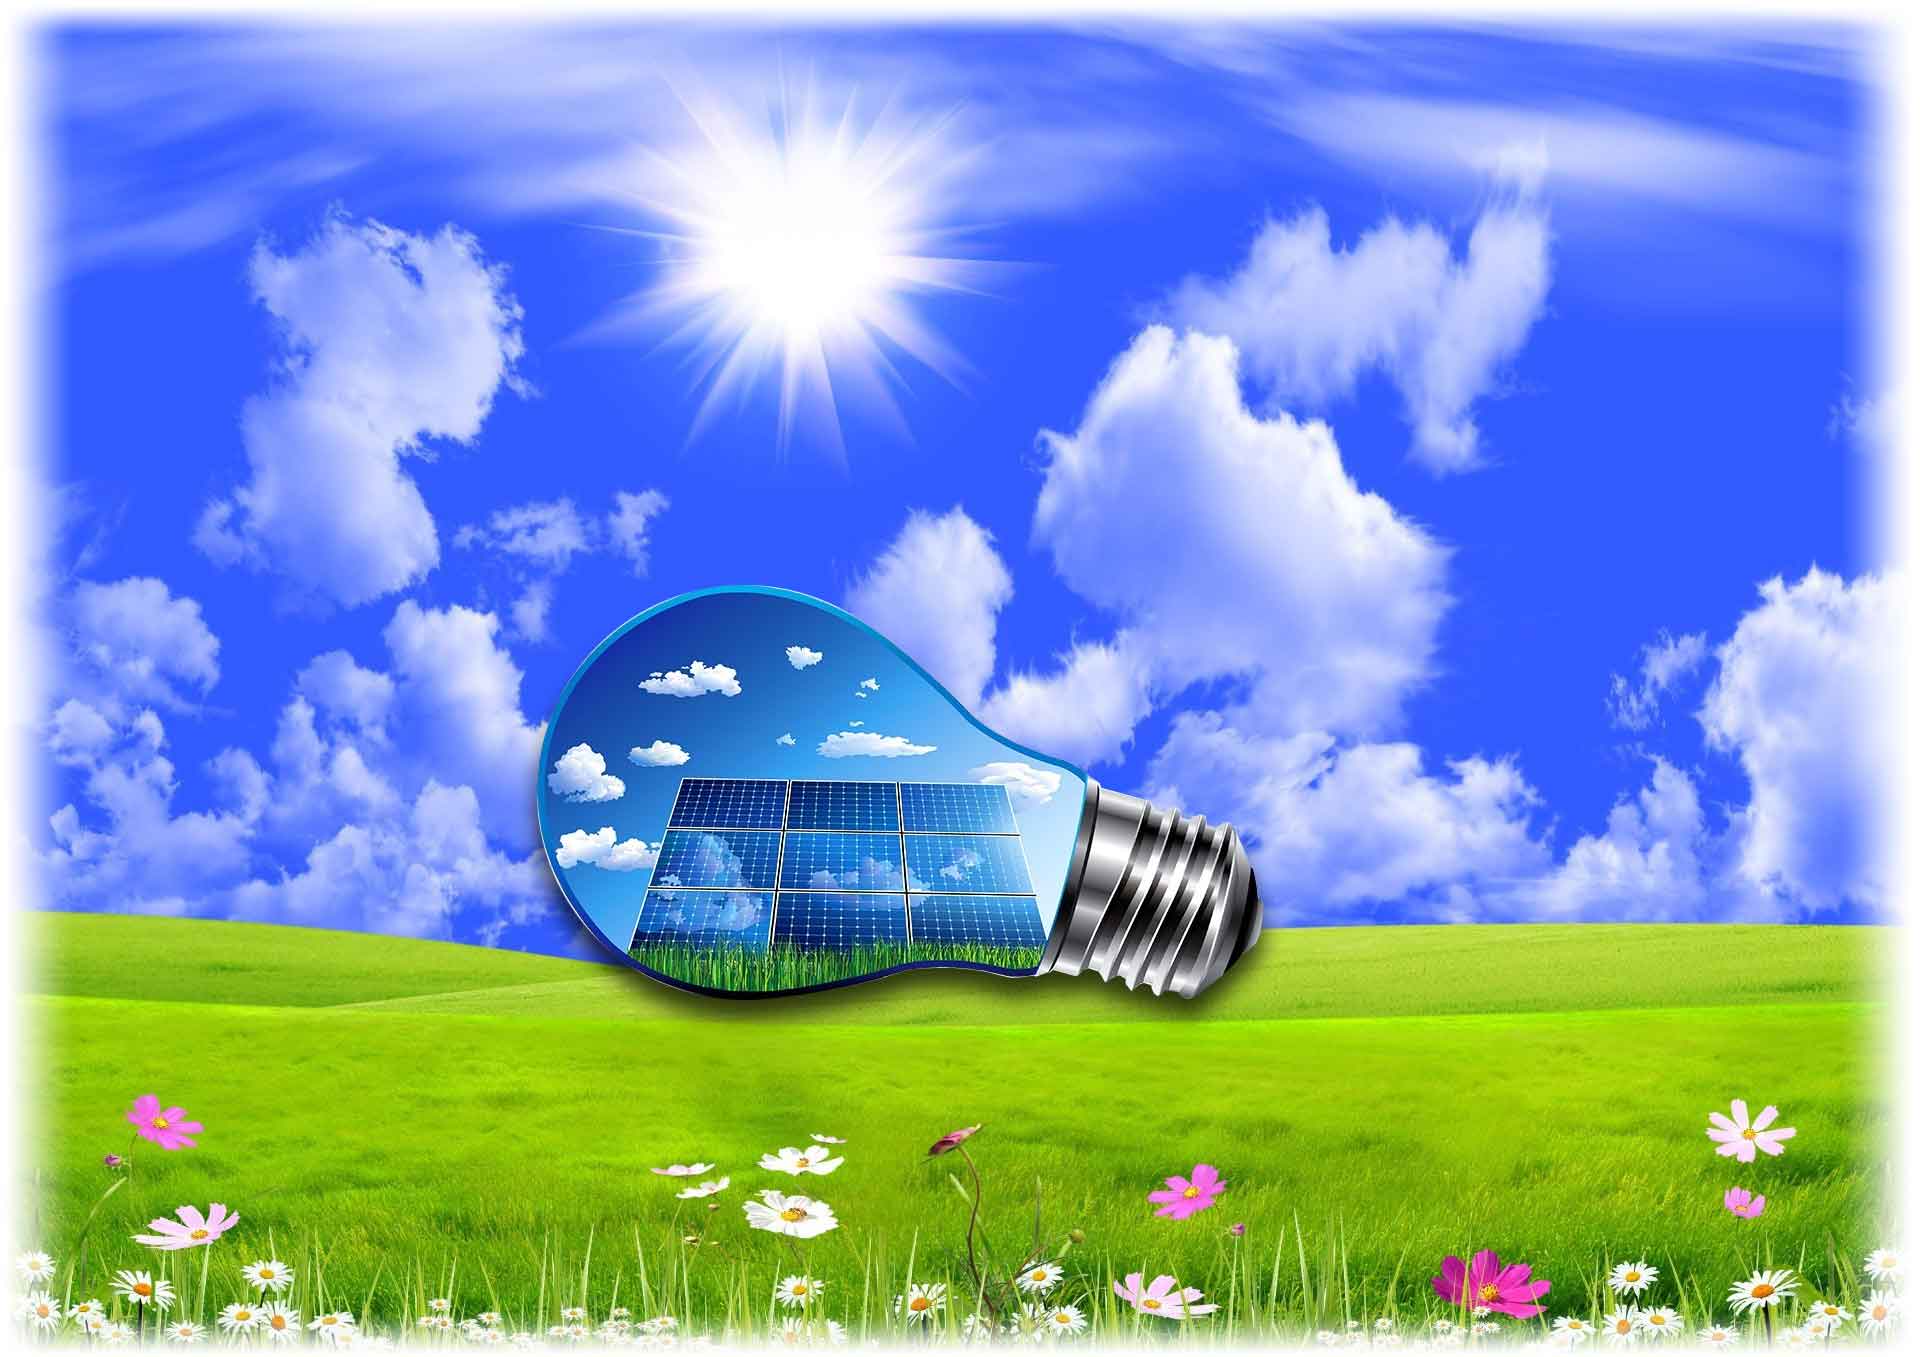 ЭКО-ЭЛЕКТРО - альтернативная, экологически чистая электроэнергия автономных солнечных электростанций.